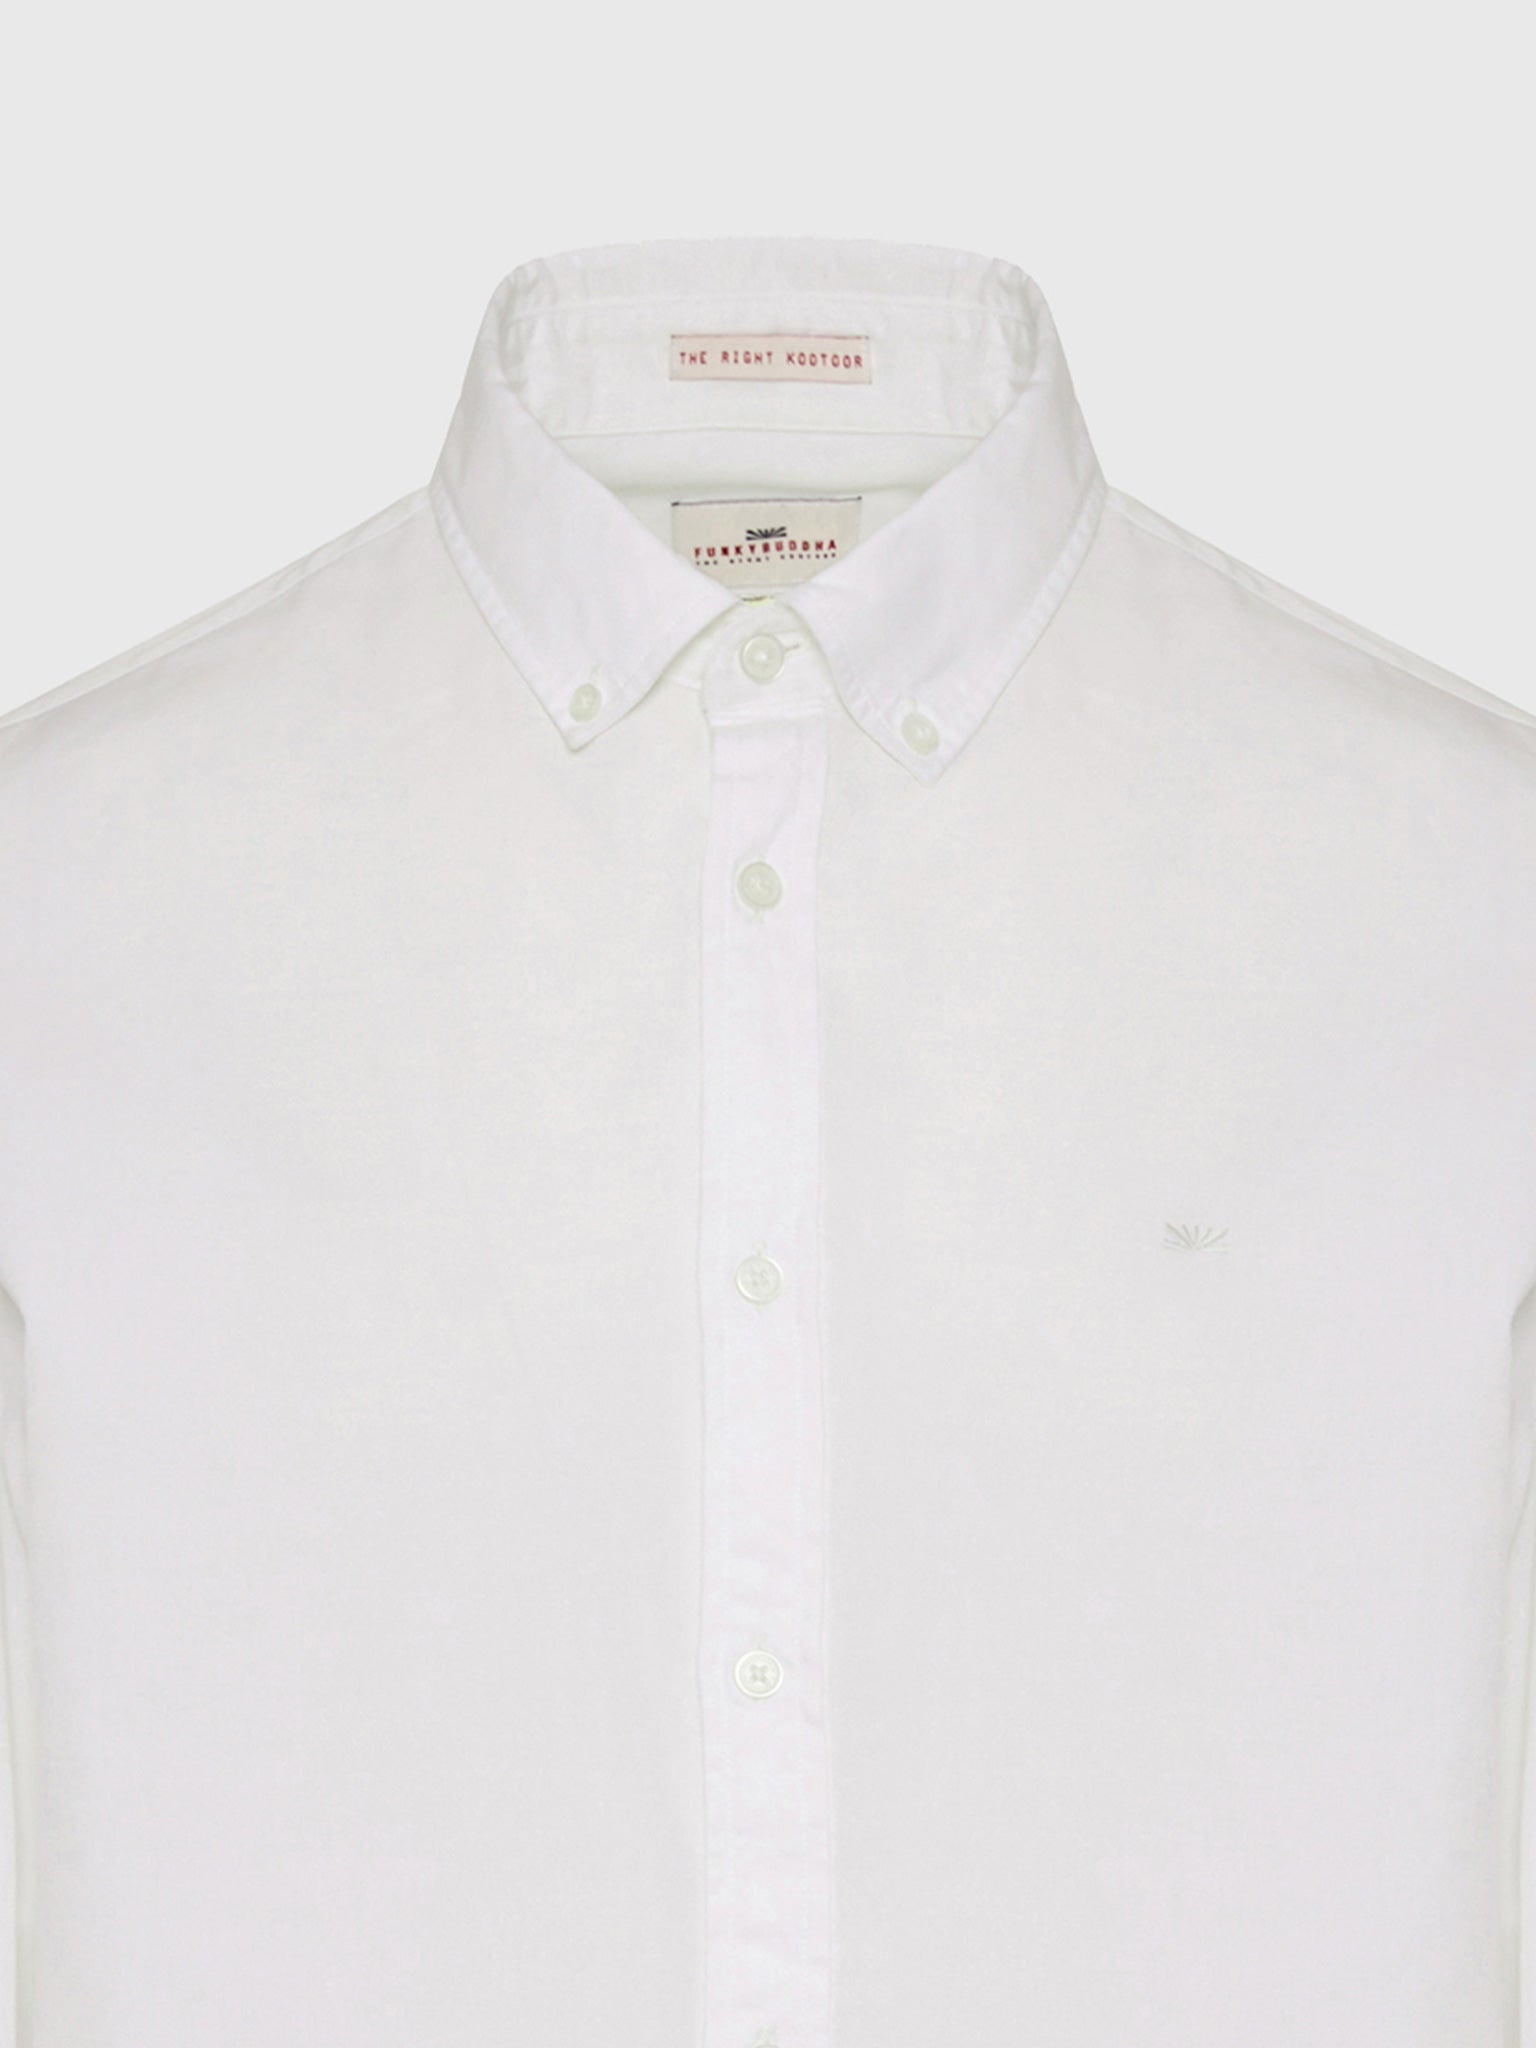 Ανδρικό πουκάμισο FBM009-015-05 | FBM009-015-05